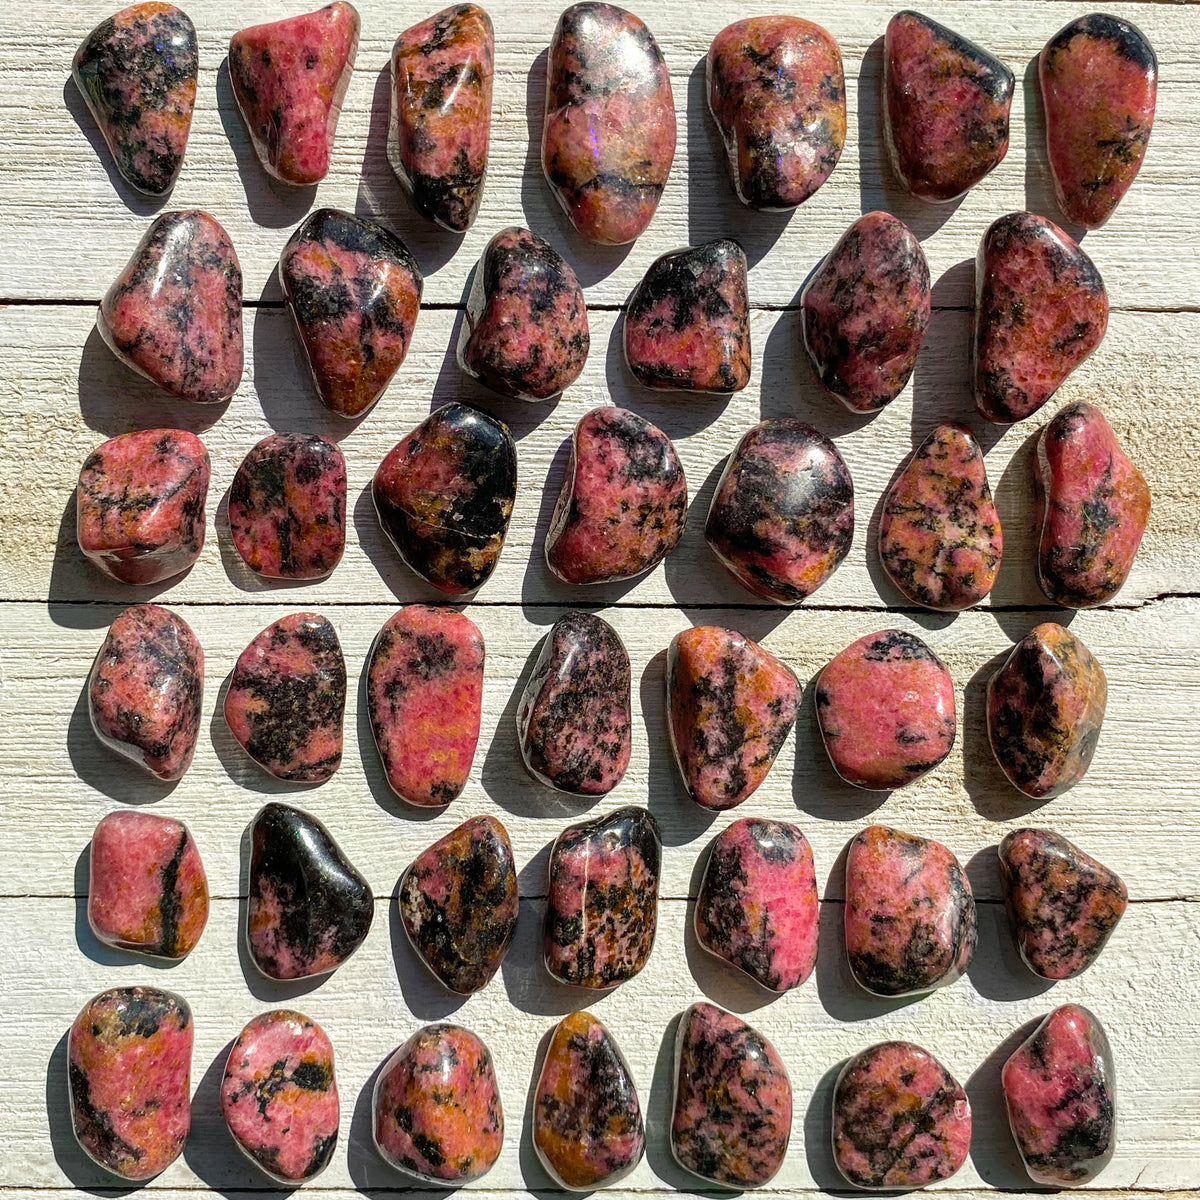 Rhodonite Pocket Stone